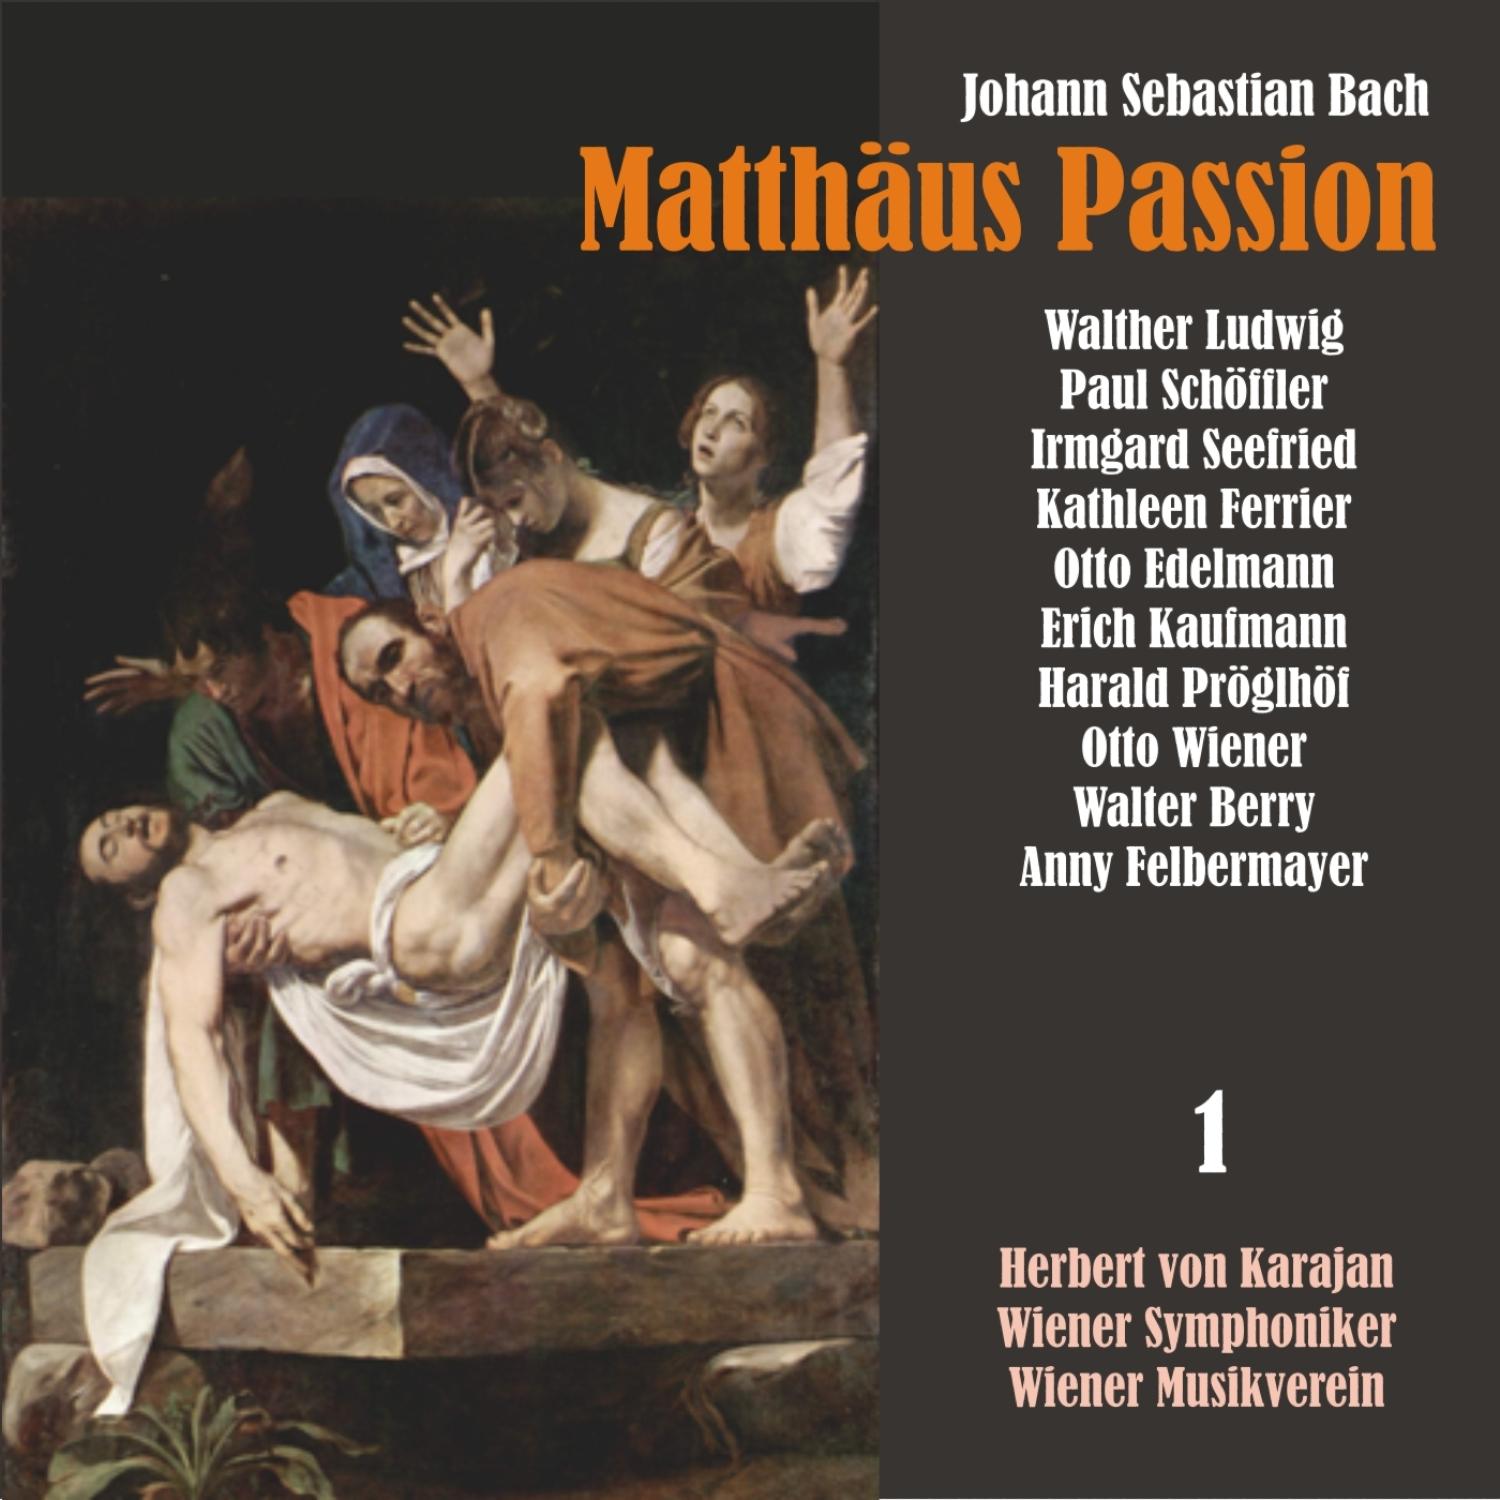 Matthäus Passion, BWV 244: "Er antwortete und sprach"